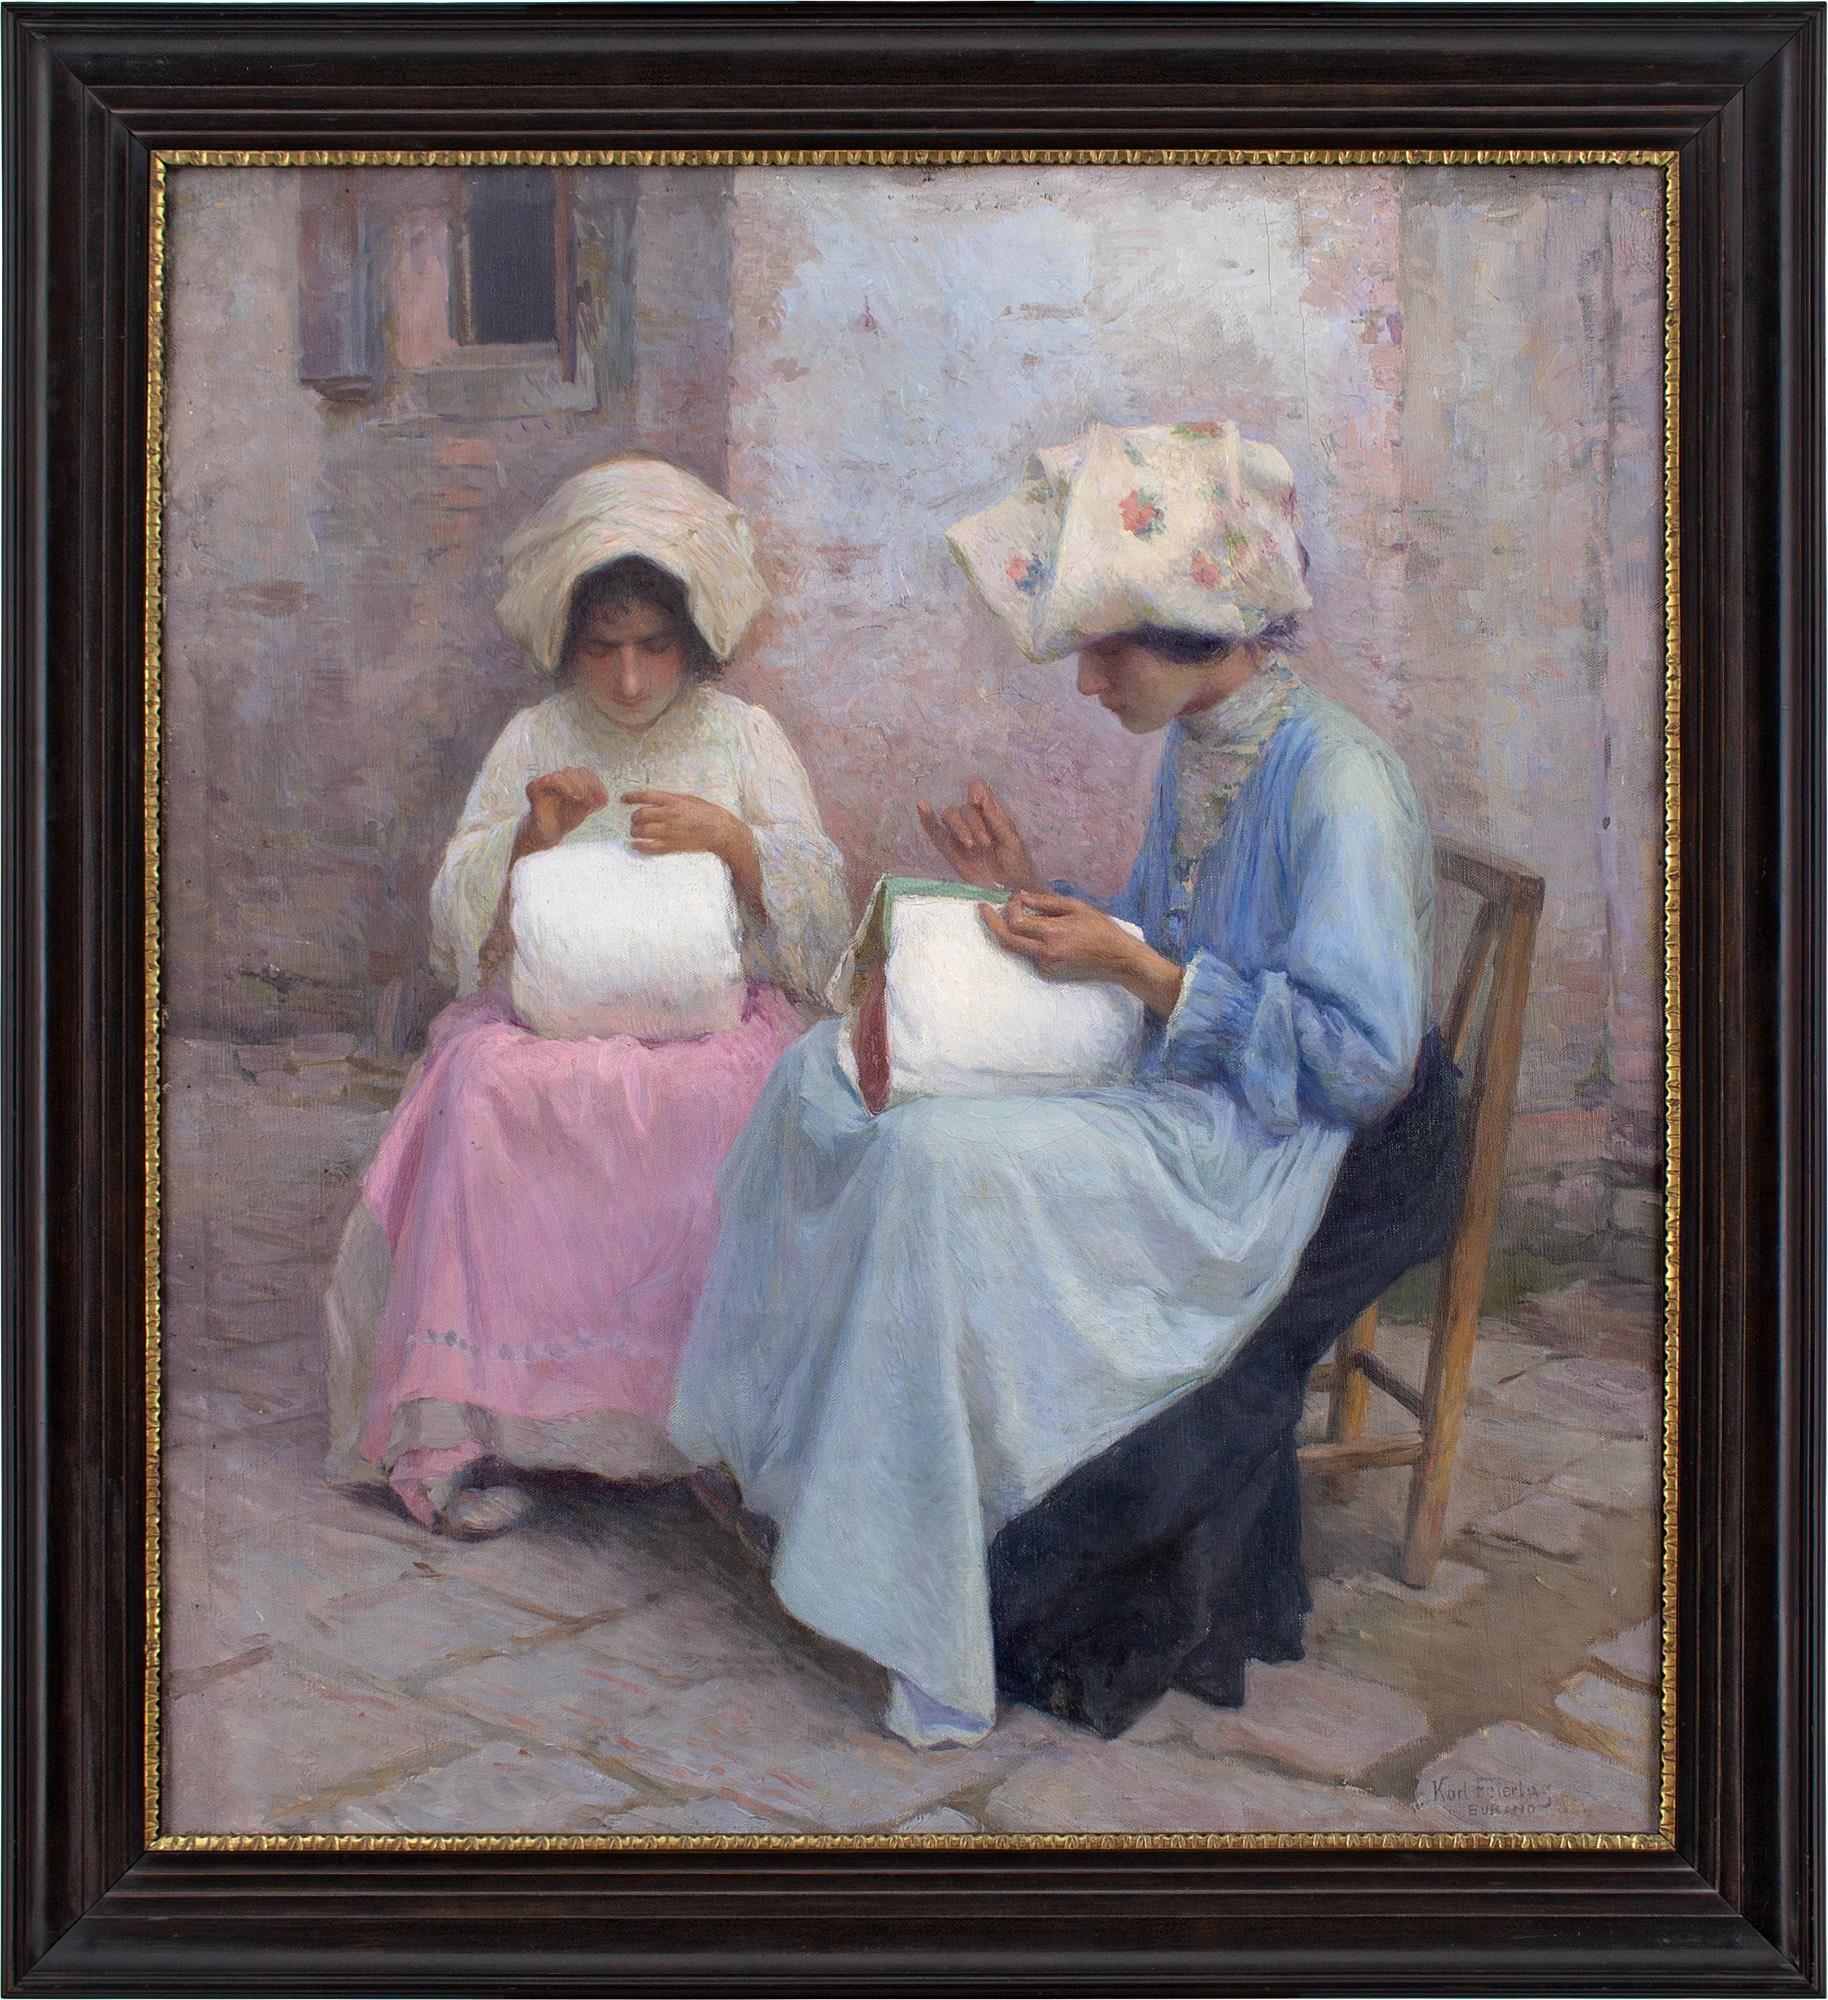 Dieses Ölgemälde des österreichischen Künstlers Karl Feiertag (1874-1944) aus dem frühen 20. Jahrhundert zeigt zwei junge Frauen, die in Burano, Venedig, Spitzen anfertigen.

In einer ruhigen Ecke des belebten Burano widmen sich zwei Klöpplerinnen